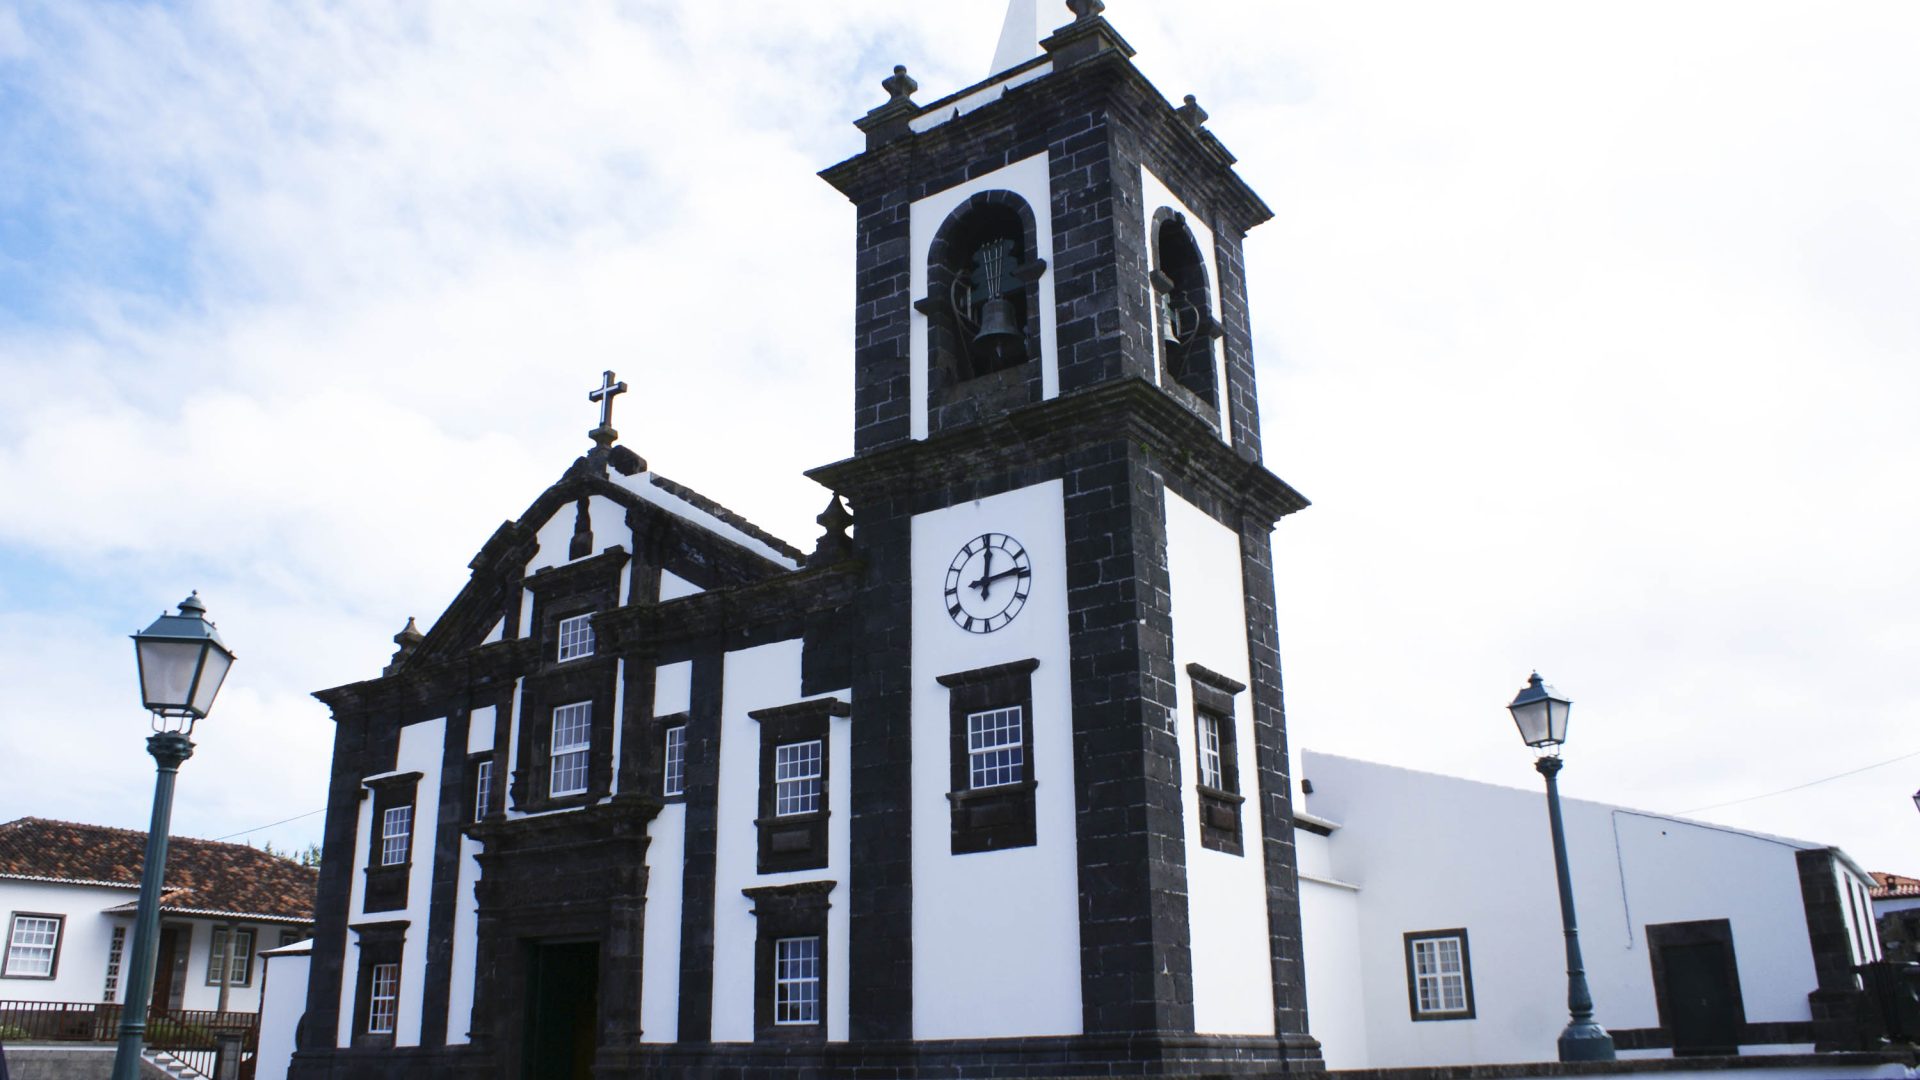 A black and white church.